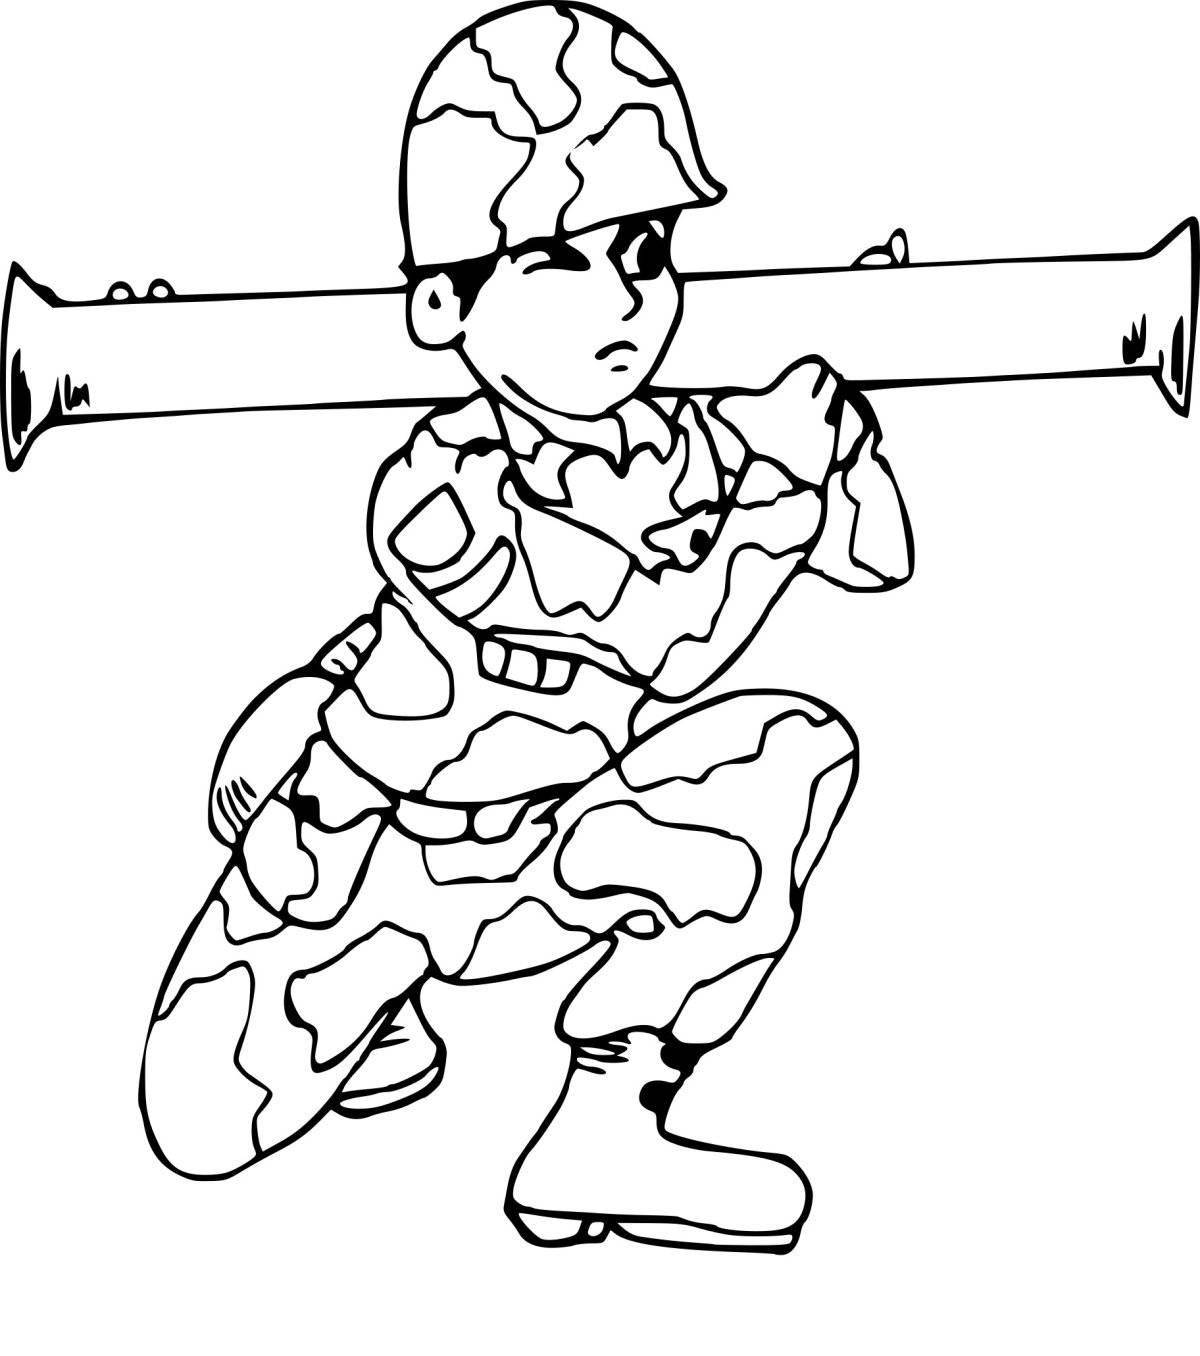 Увлекательная раскраска военной профессии для детей 3-4 лет